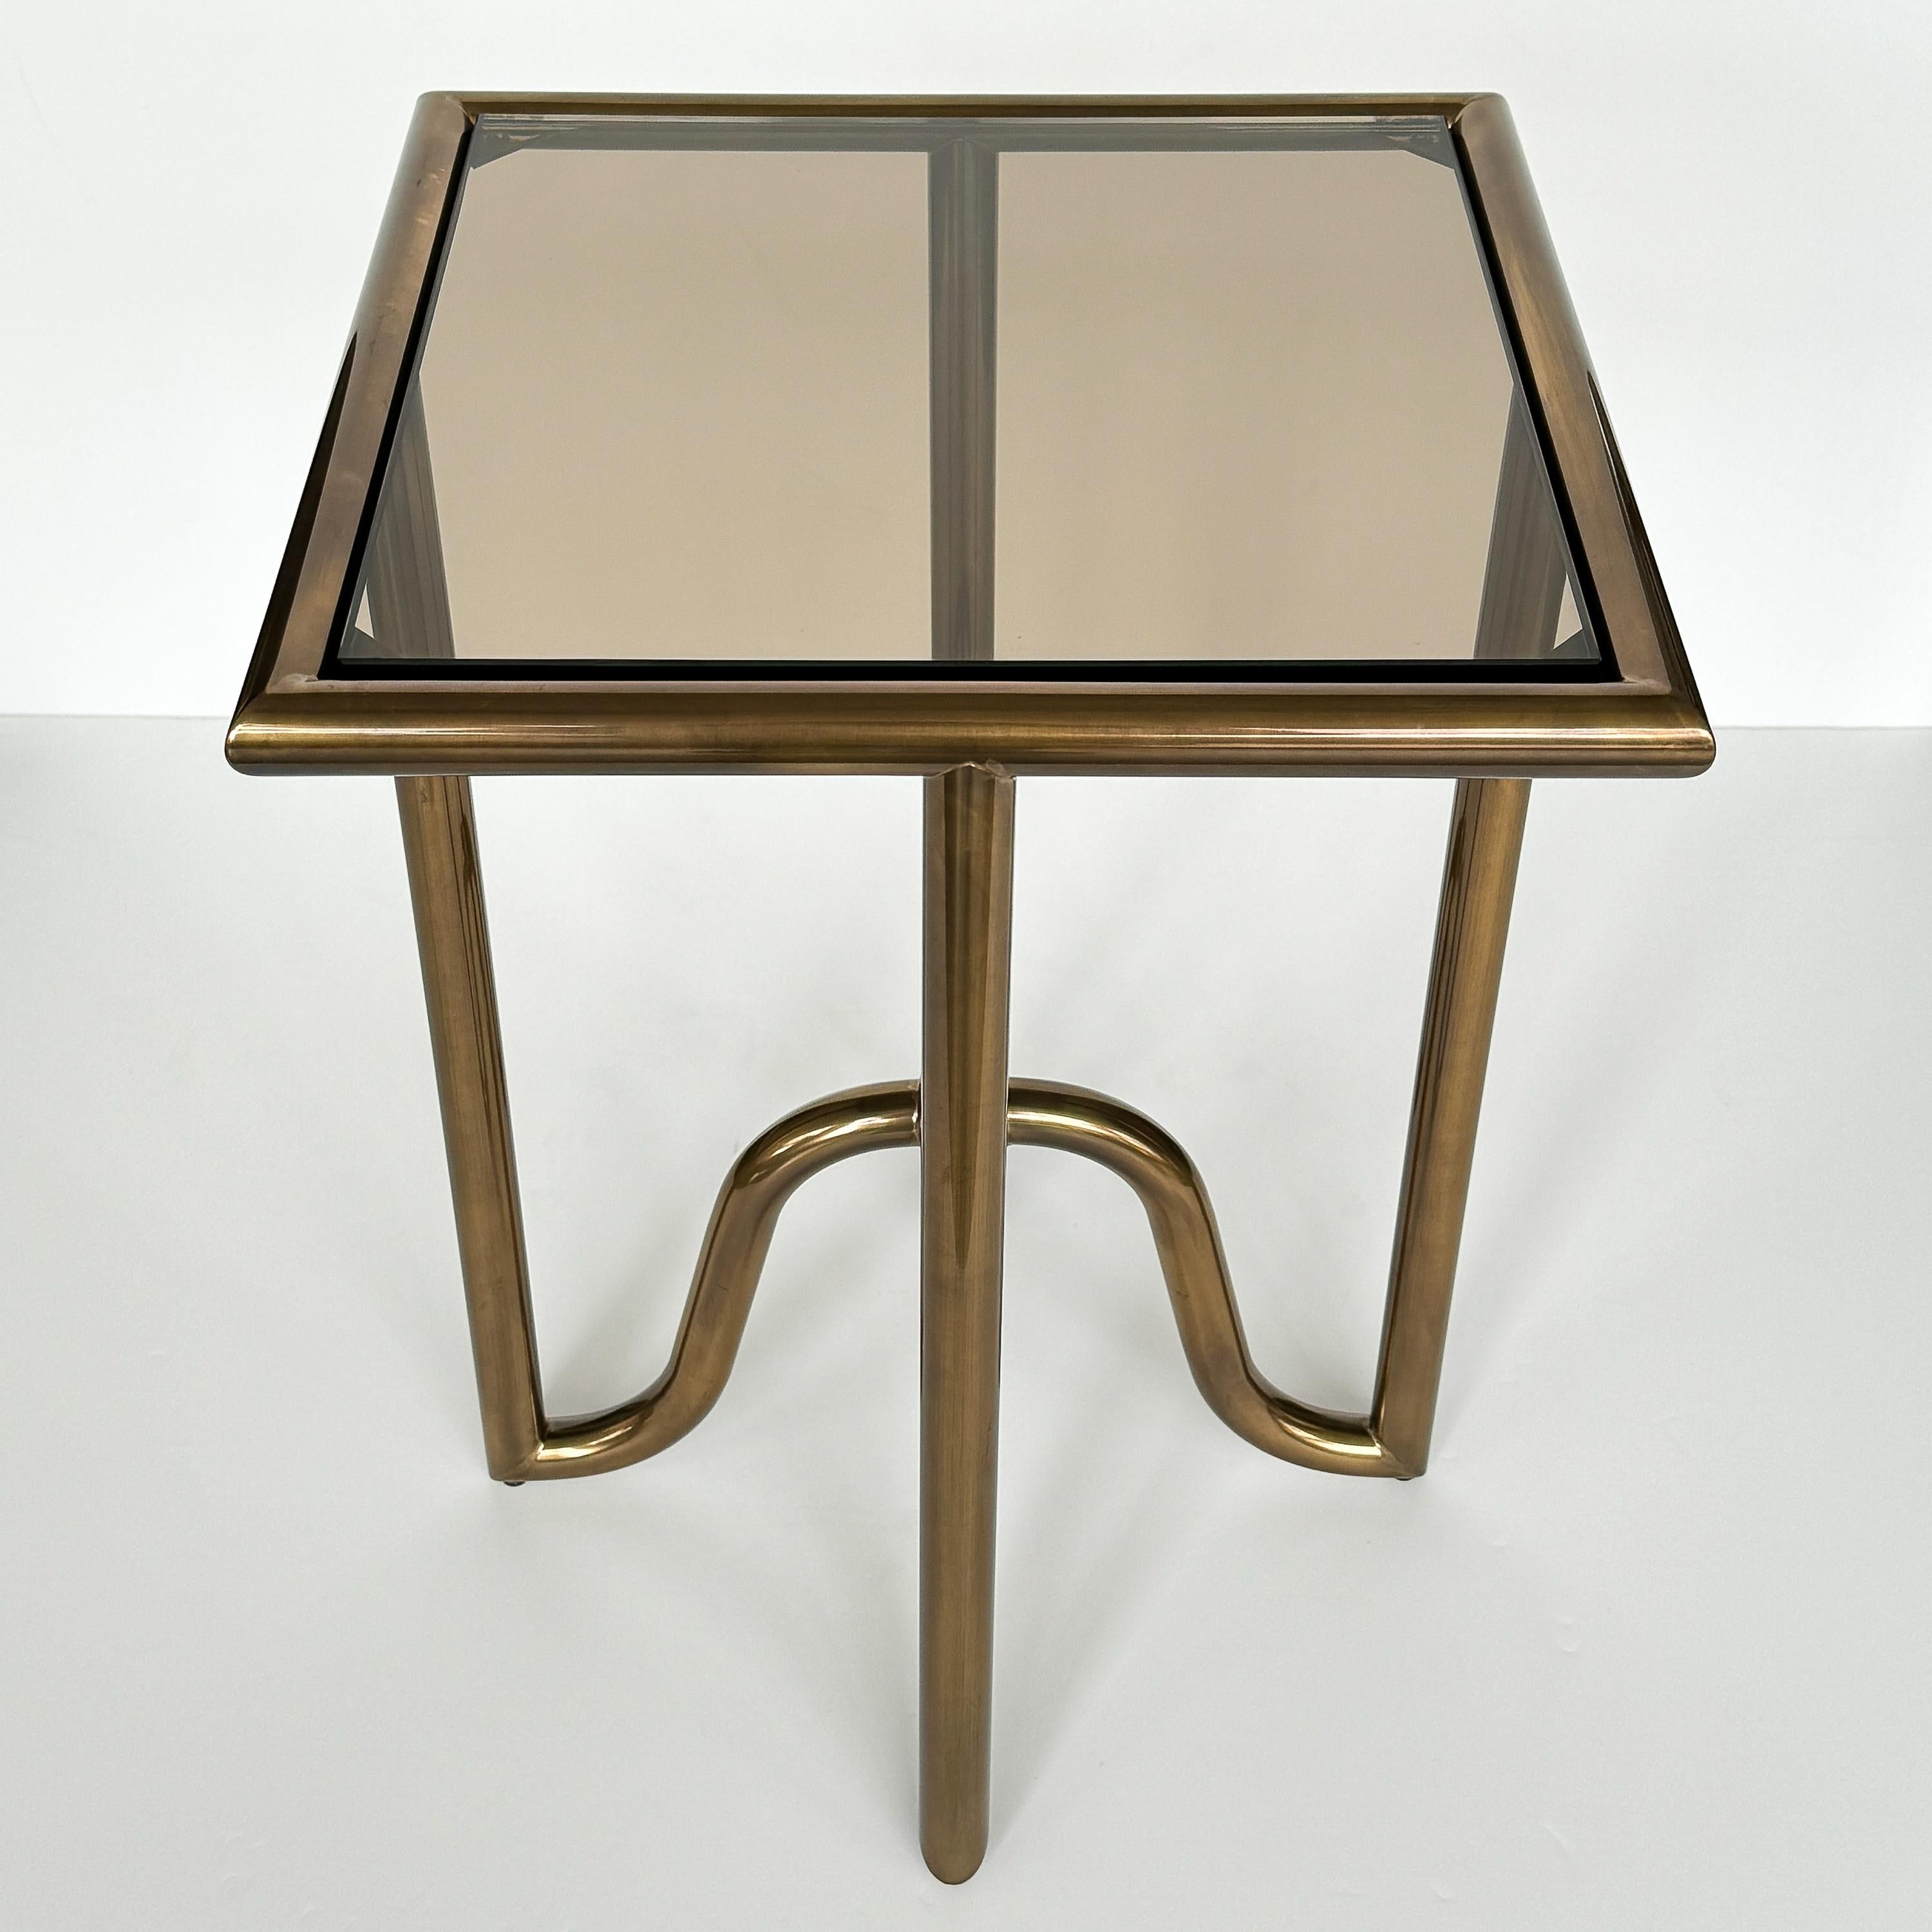 Voici la table d'appoint Lien Tray en bronze de Laura CIRCA pour Baker Furniture, États-Unis, vers le début du 21e siècle. Cette pièce exquise est dotée d'une structure tubulaire en laiton lustré, d'un diamètre de 1